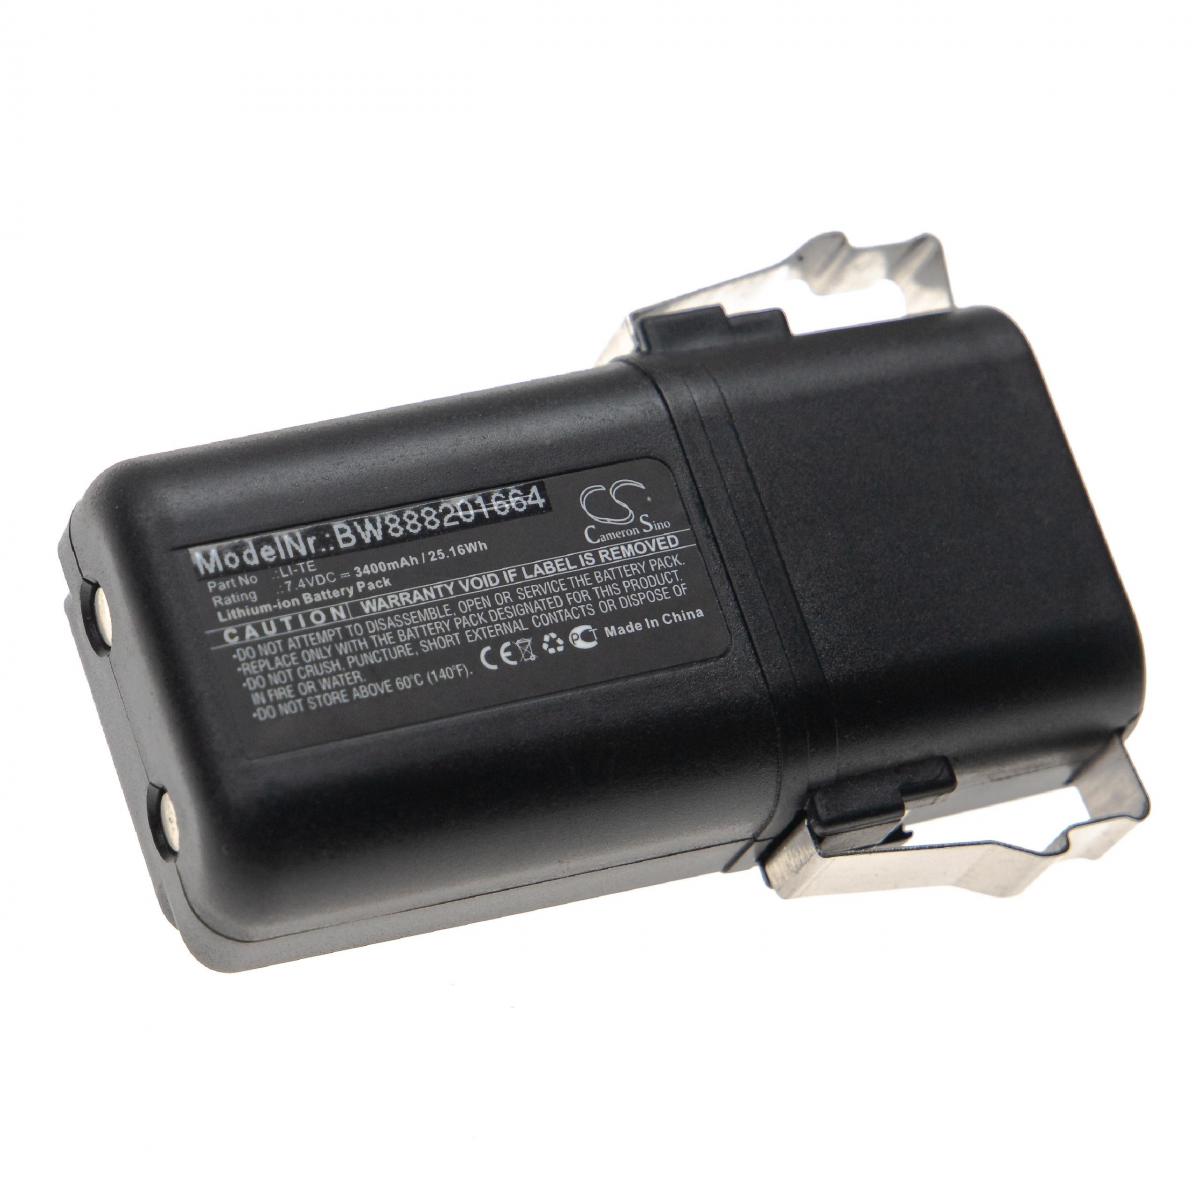 Vhbw - vhbw Batterie remplace Elca LI-TE pour télécommande industrielle (3400mAh, 7,7V, Li-Ion) - Autre appareil de mesure